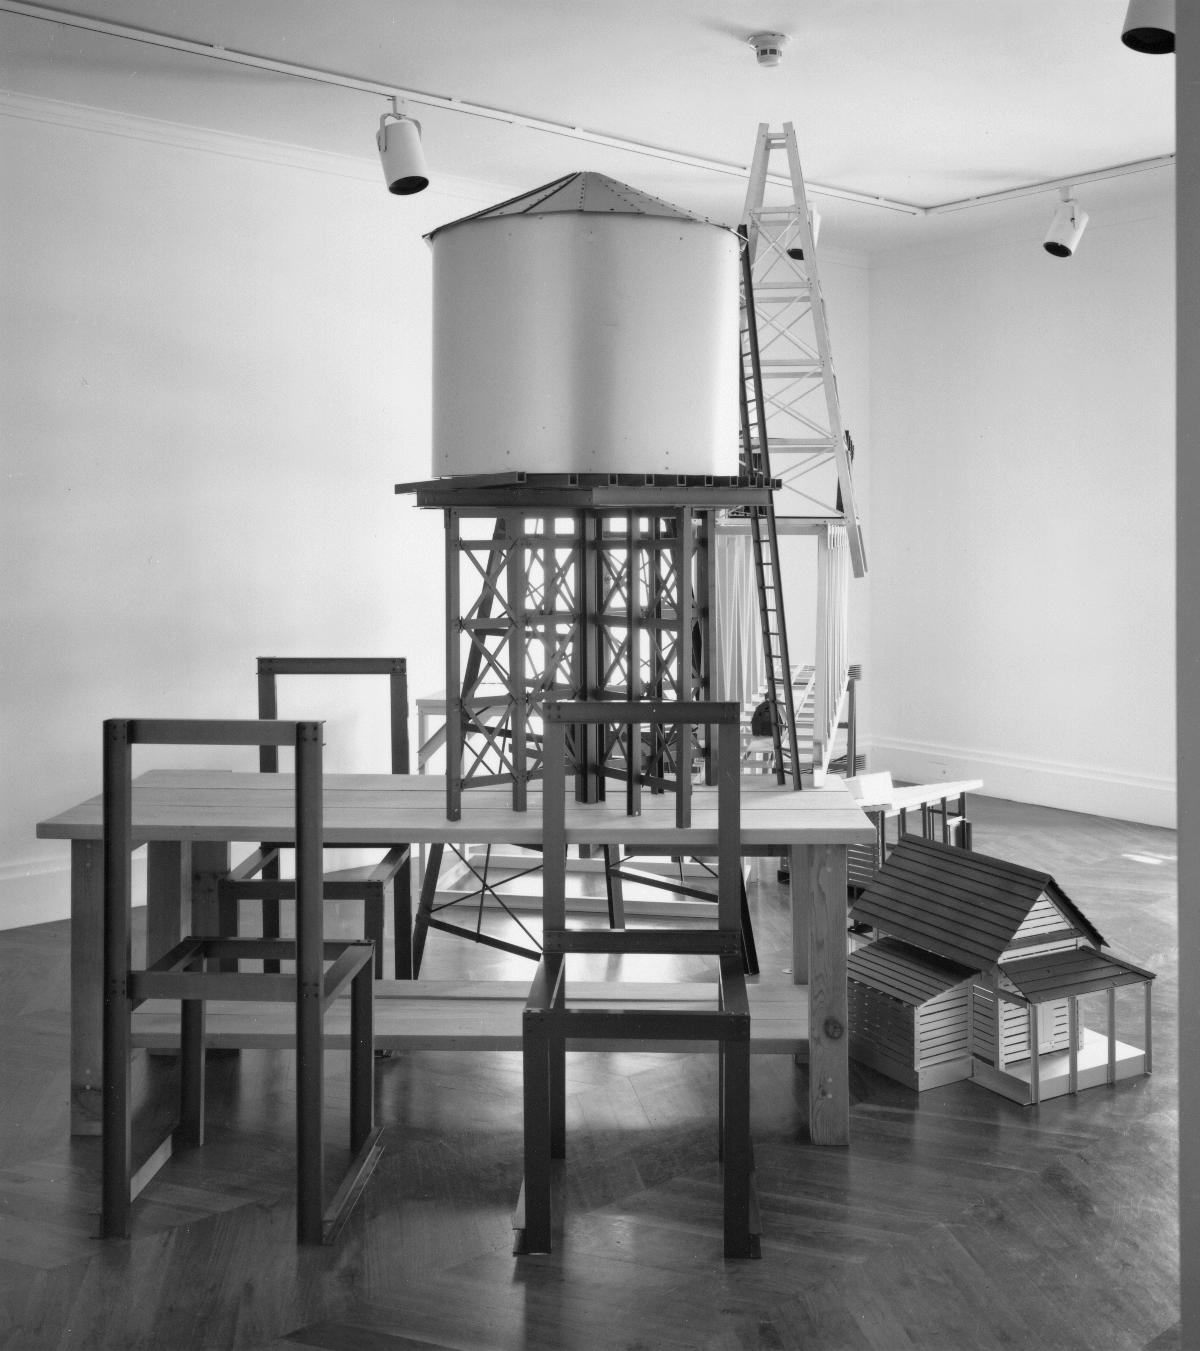 Siah Armajani, <em>Siah Armajani: Recent Work</em>, May 15 – October 31, 1993 (installation view, 1993)